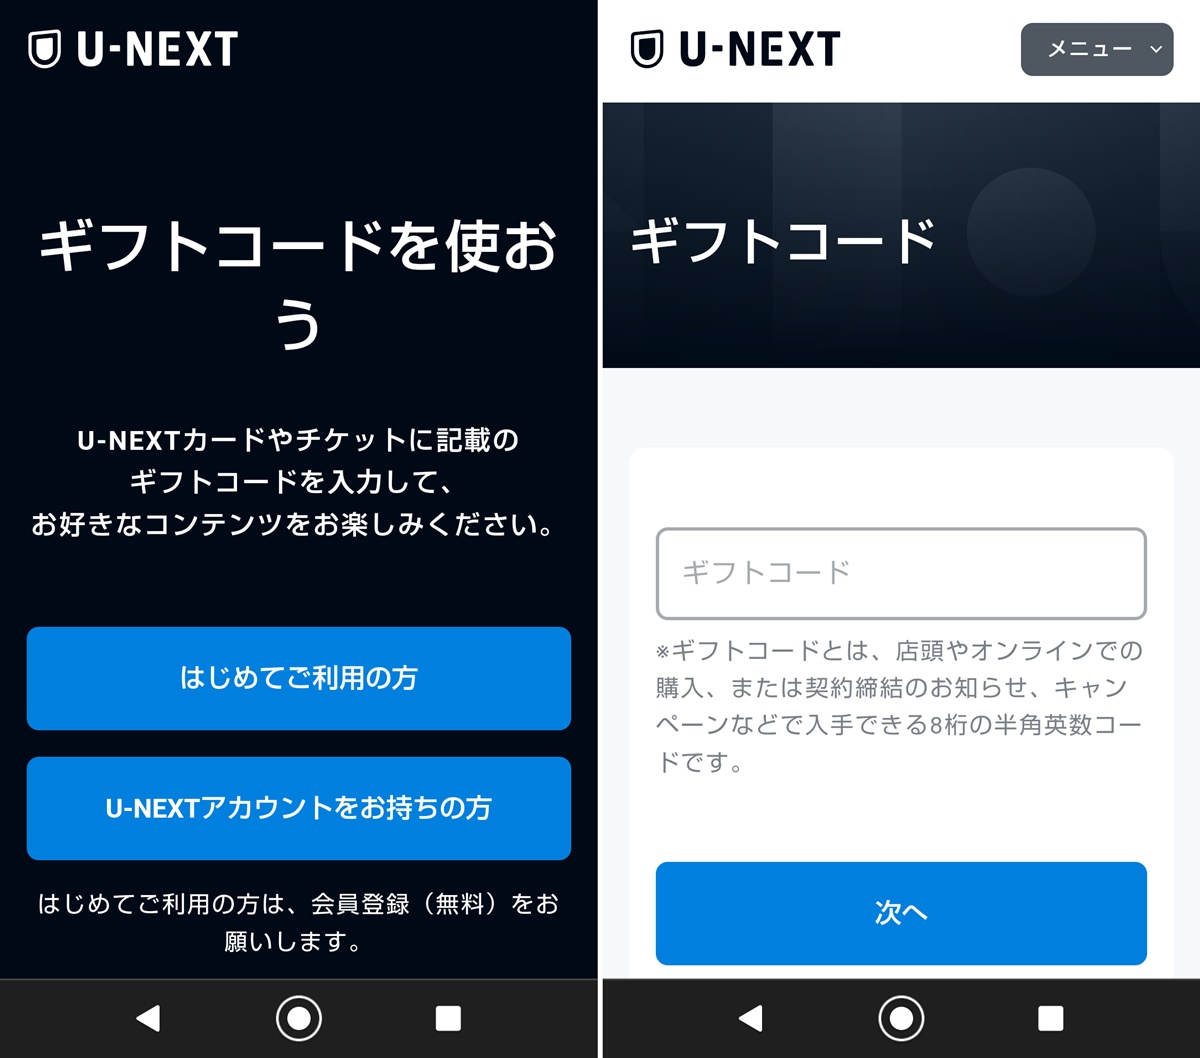 U-NEXT（ユーネクスト）を安く利用できる「ギフトコード」の使い方、登録方法